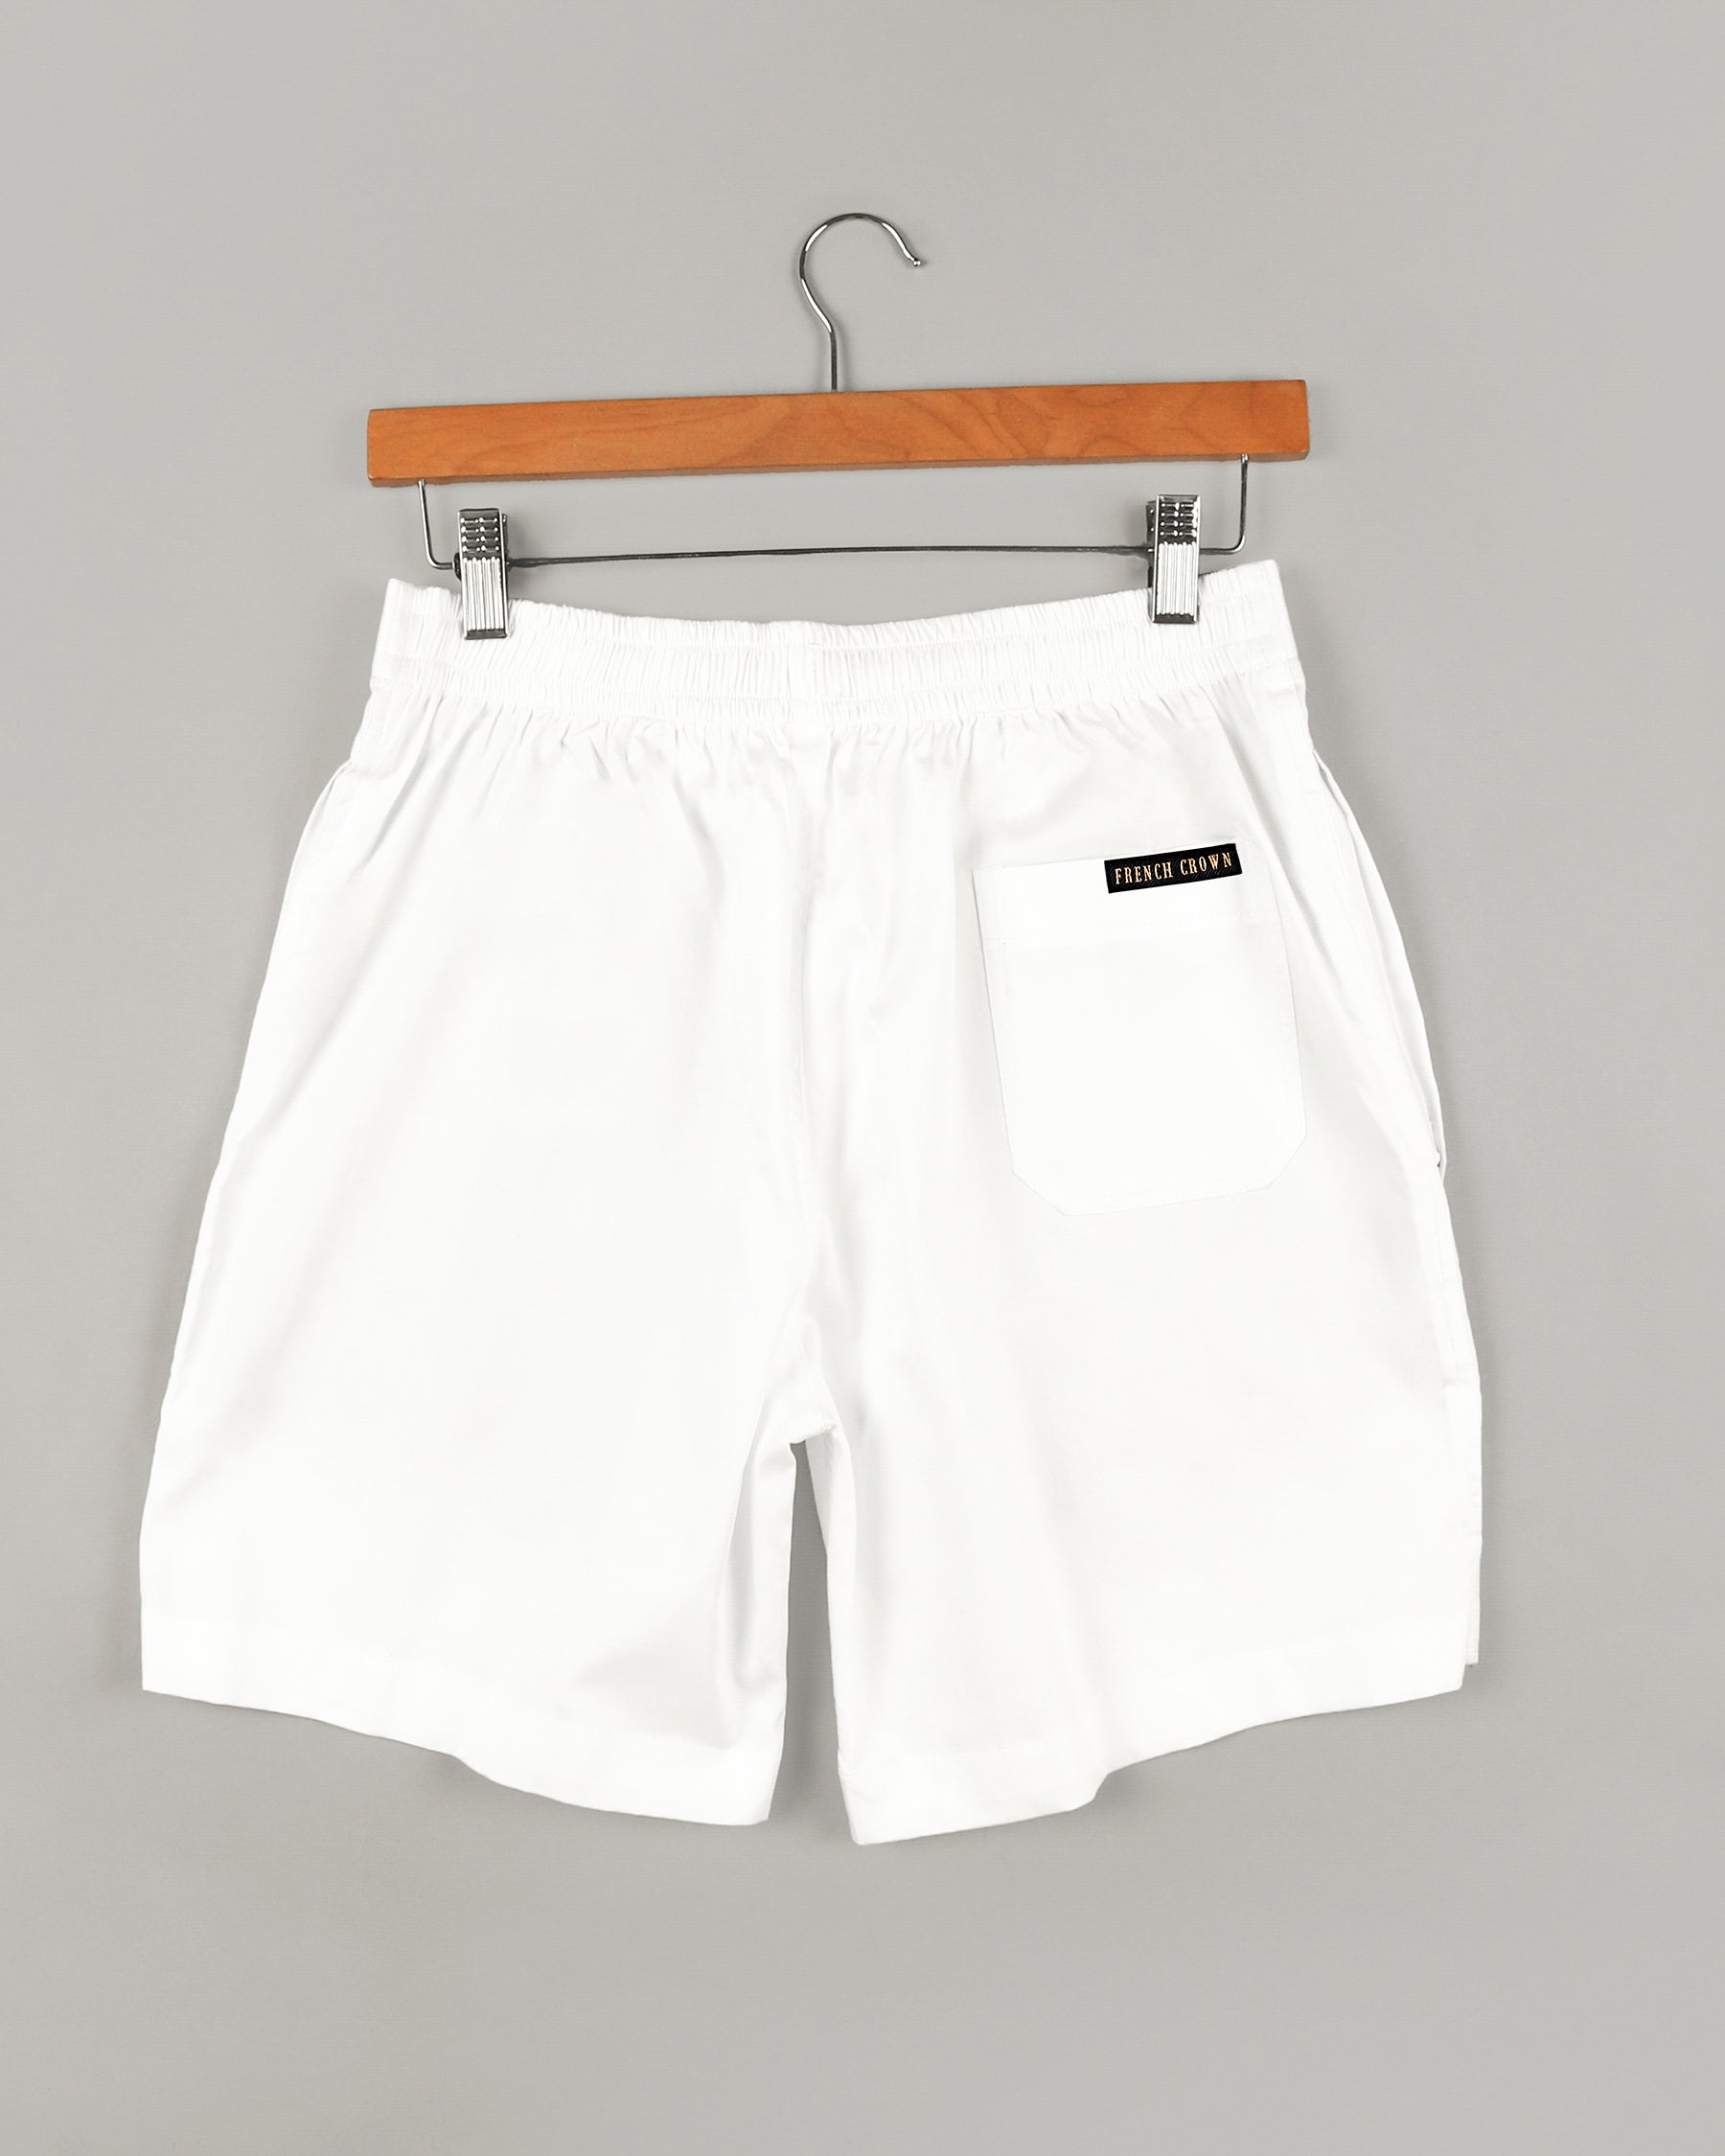 Two Bright White Super soft Premium Cotton Shorts